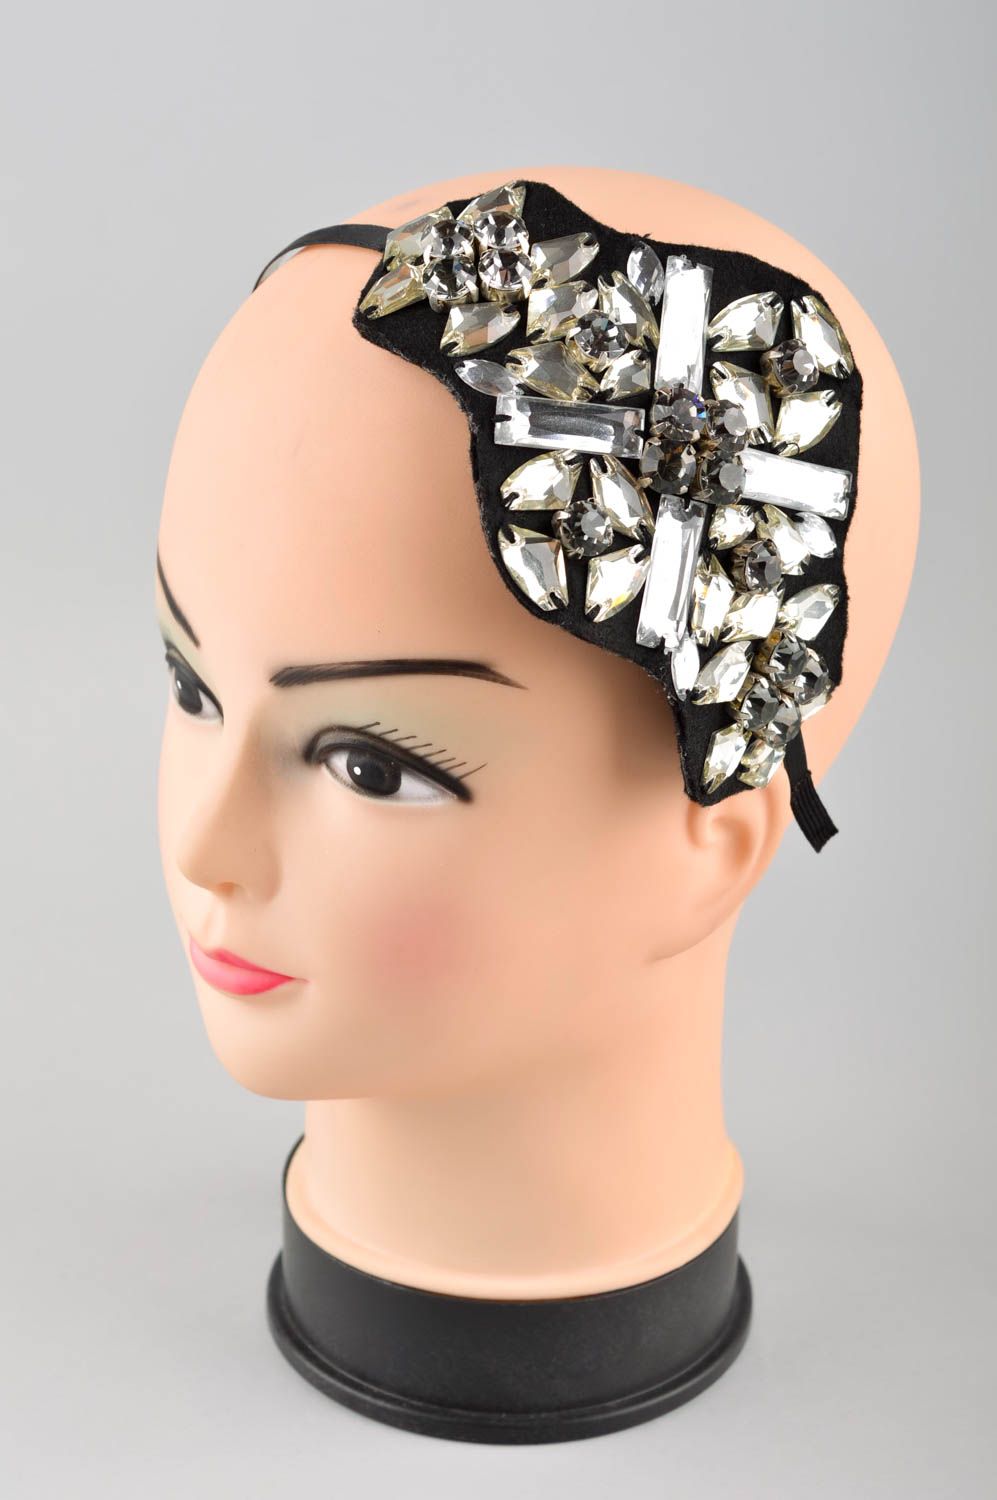 Аксессуар для волос хэнд мэйд обруч на голову из войлока женский аксессуар фото 1